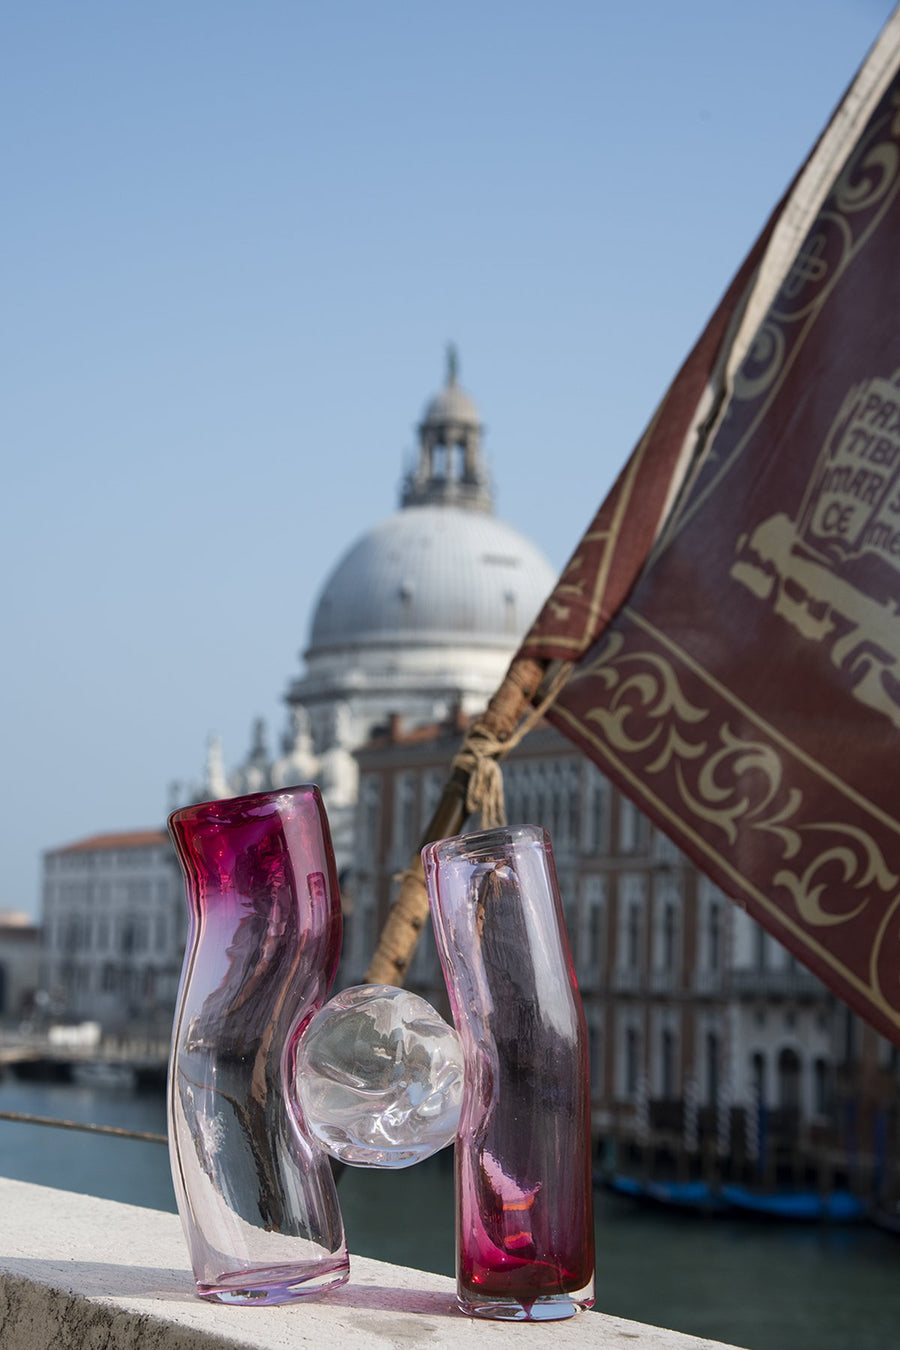 Flavie Audi artist glass blowing glass vase les vases communiquant  pink series